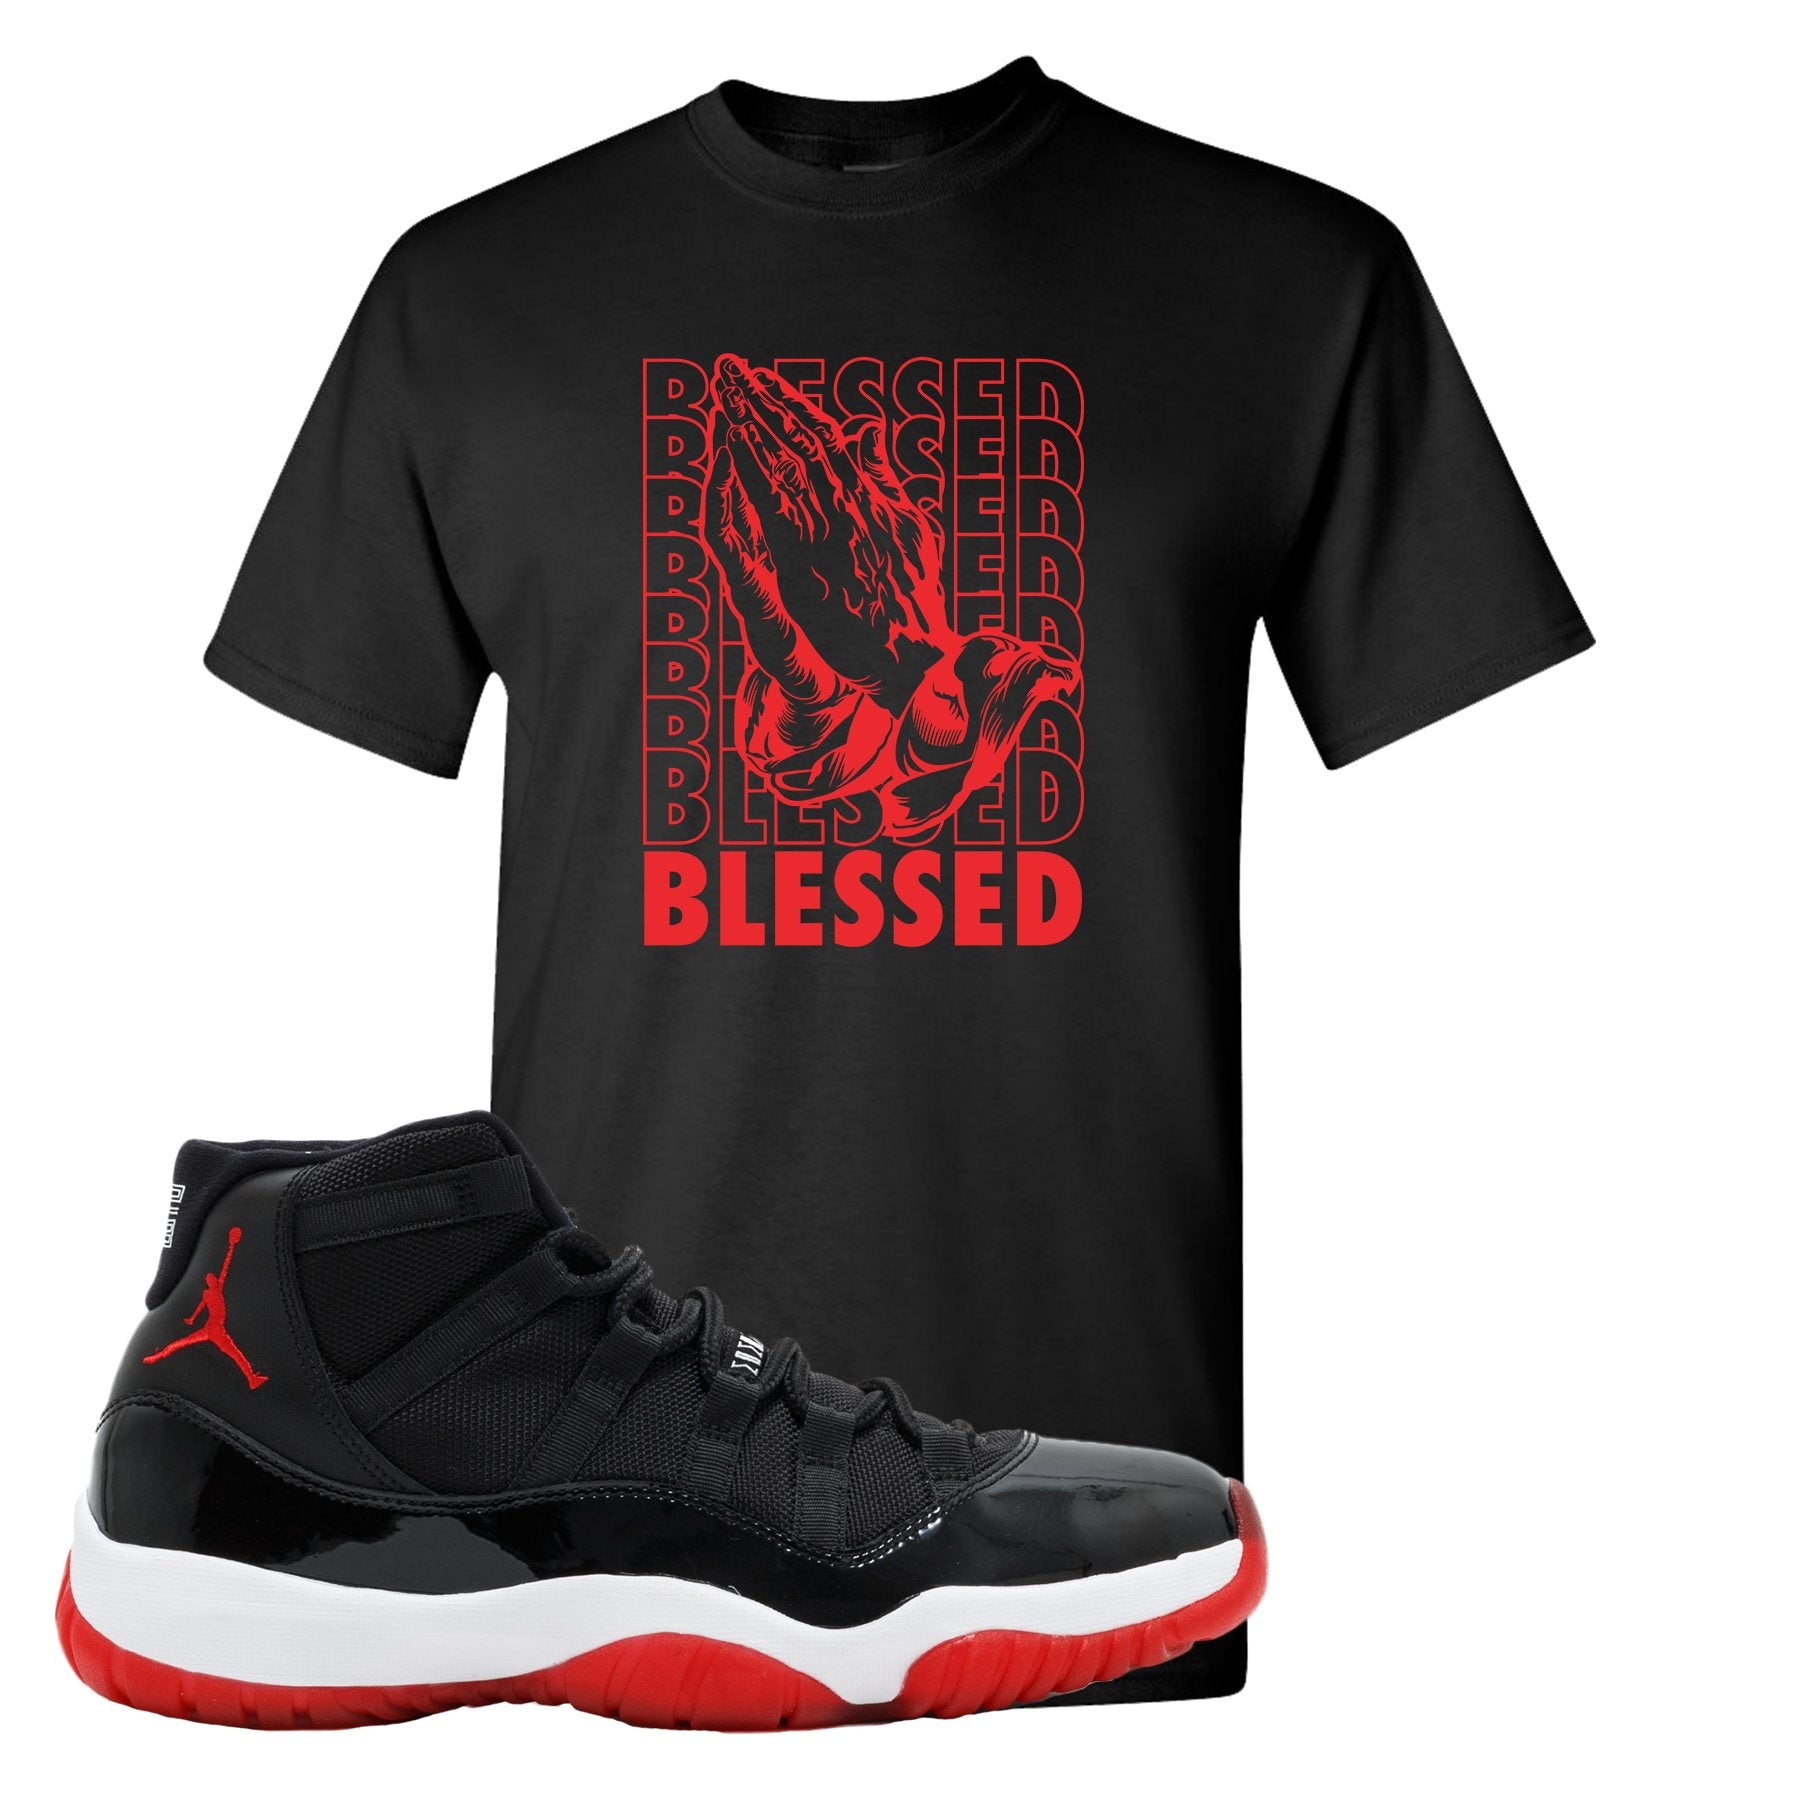 Jordan 11 Bred Blessed Black Sneaker Hook Up T-Shirt